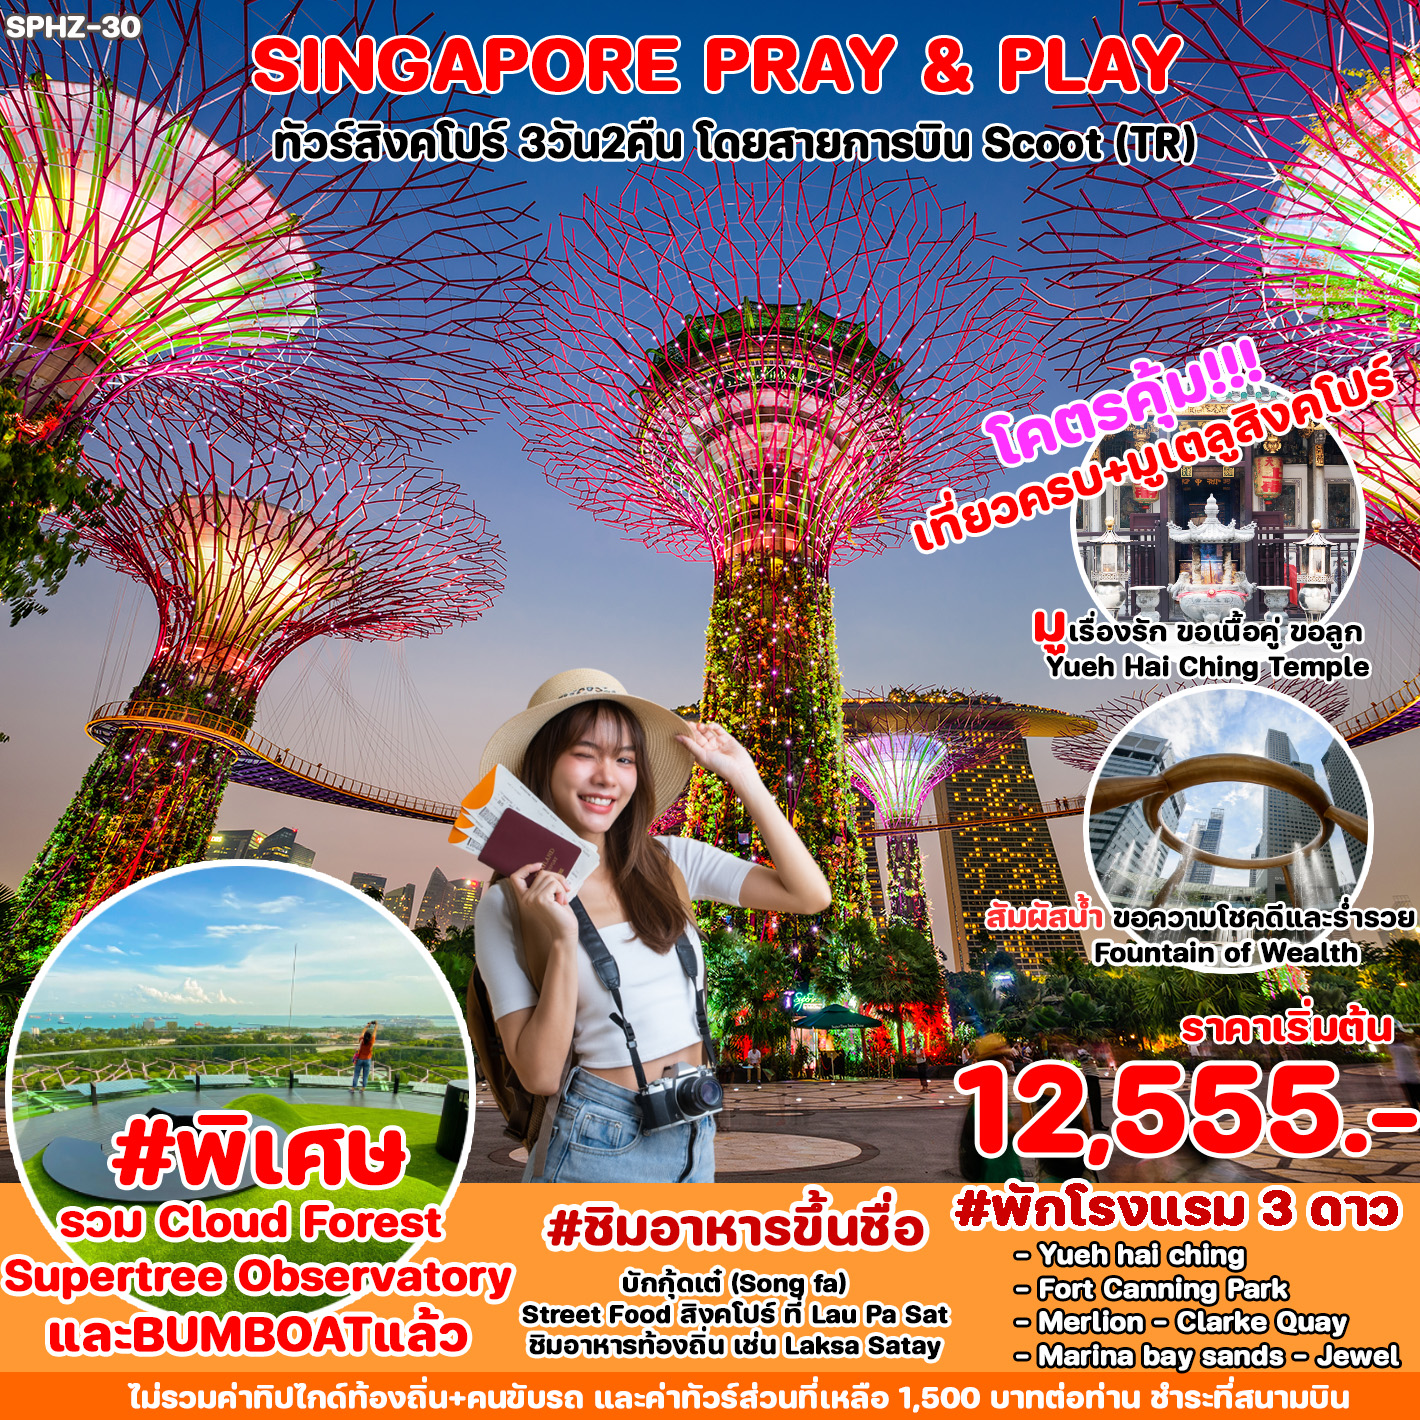 ทัวร์ Singapore Pray & Play